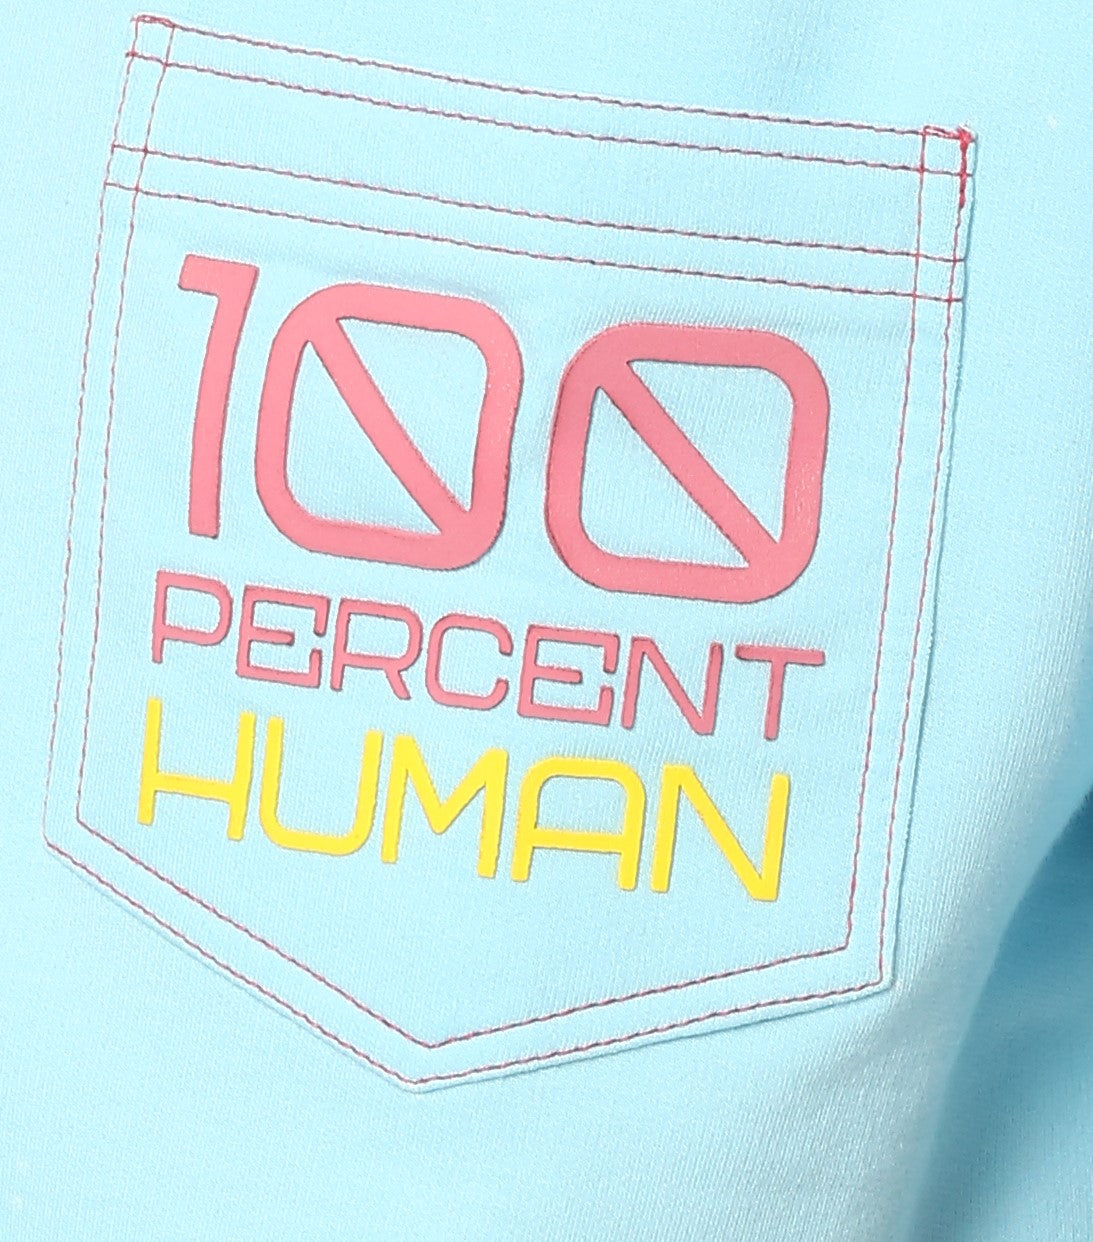 100% HUMAN